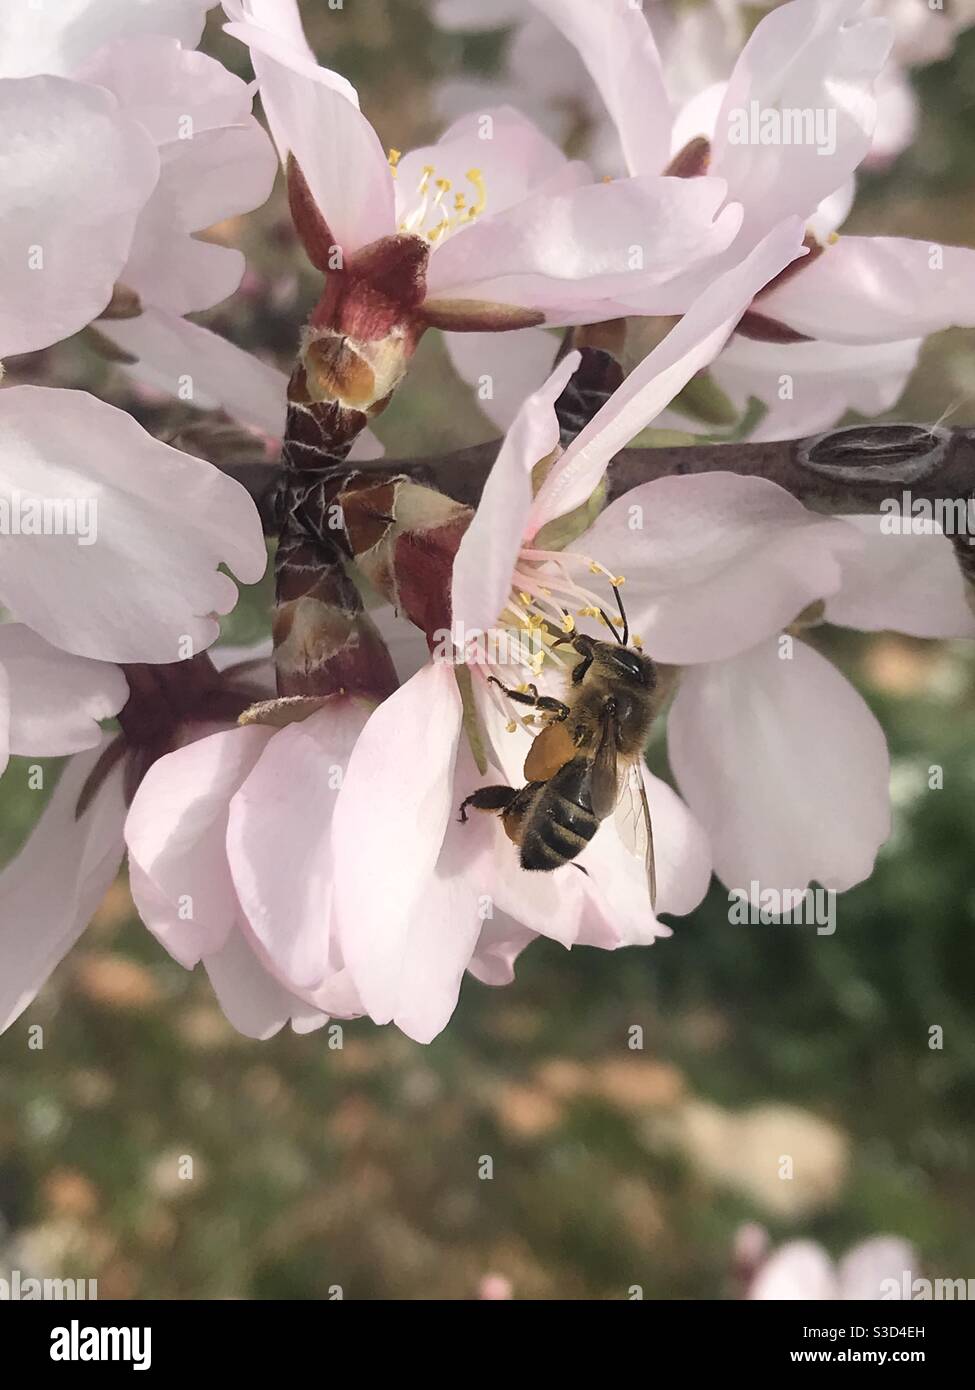 Abeja ocupada con cesta llena de polen - flor de almendra Foto de stock